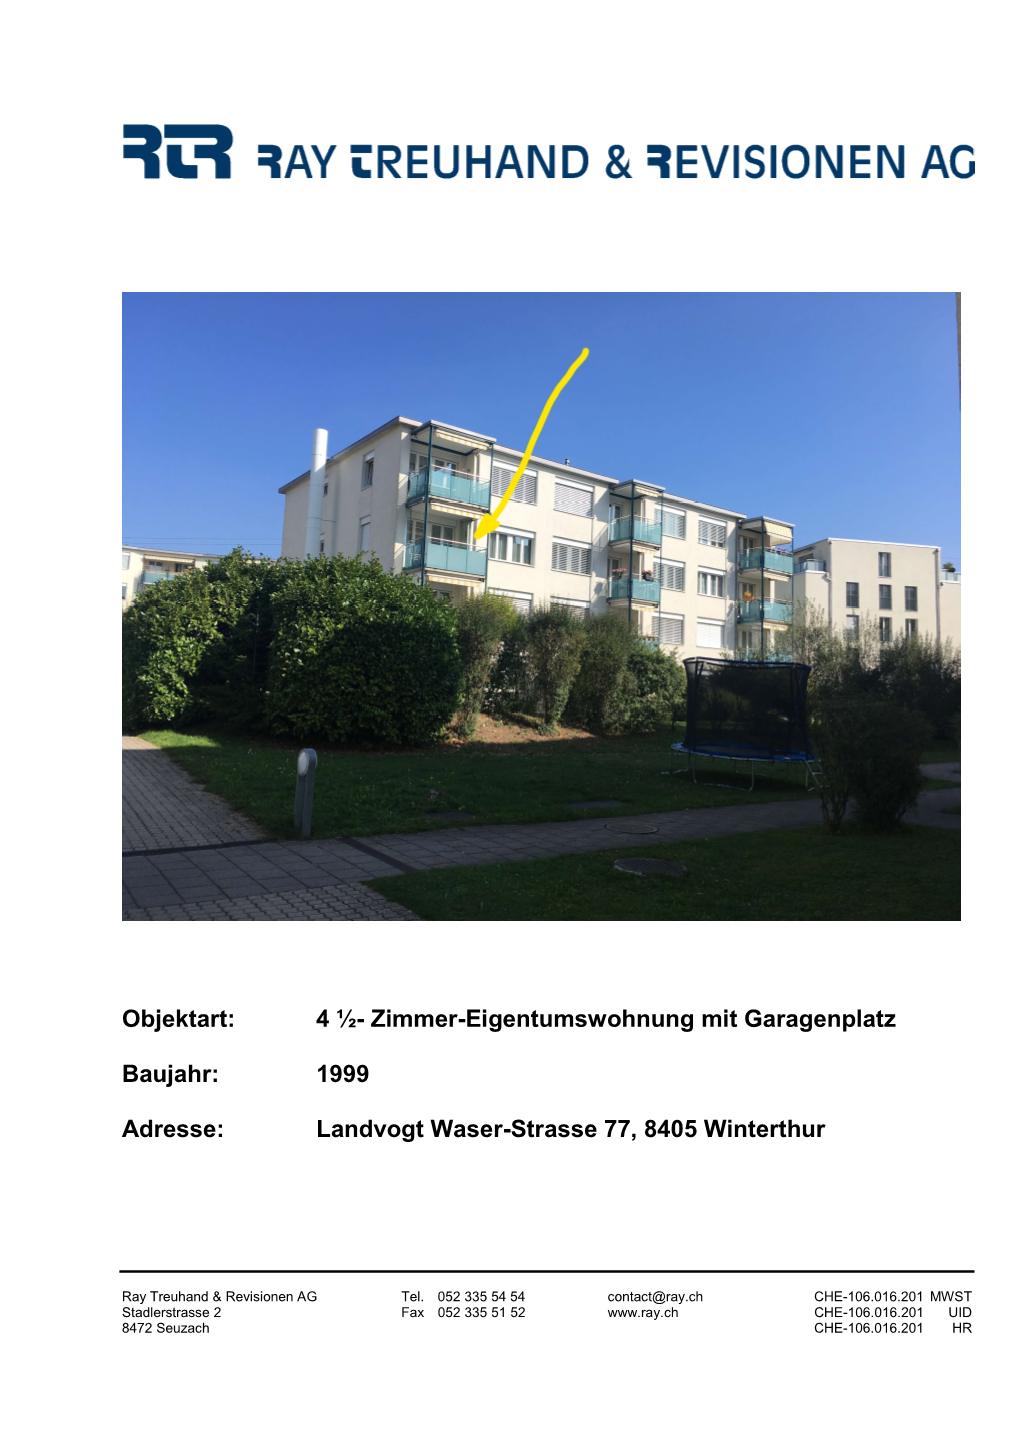 1999 Adresse: Landvogt Waser-Strasse 77, 8405 Winterthur